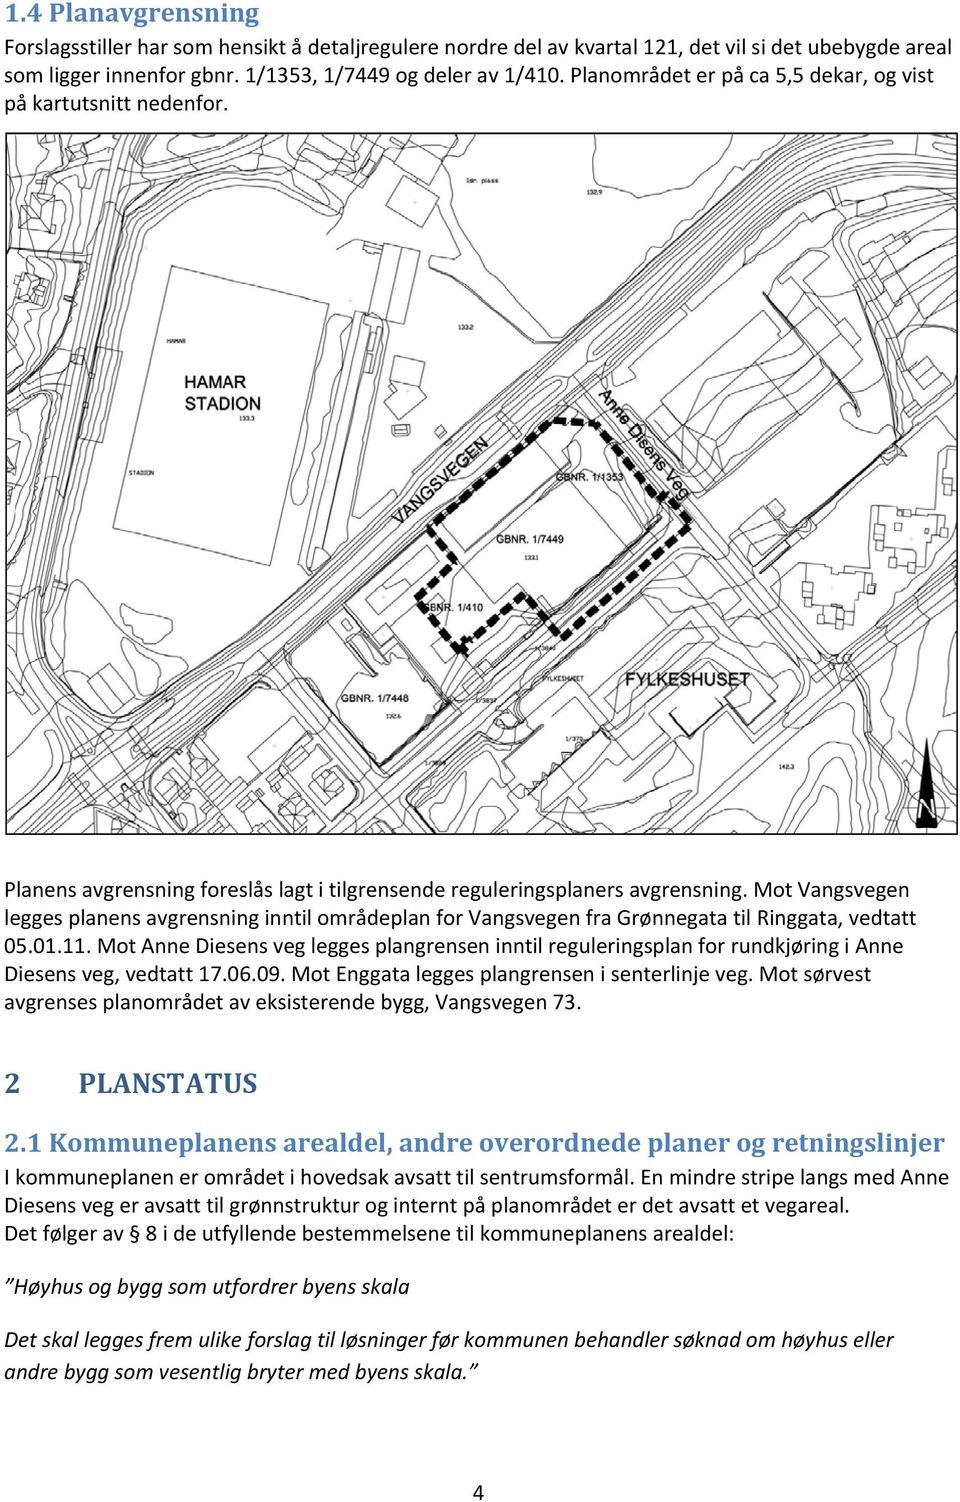 Mot Vangsvegen legges planens avgrensning inntil områdeplan for Vangsvegen fra Grønnegata til Ringgata, vedtatt 05.01.11.